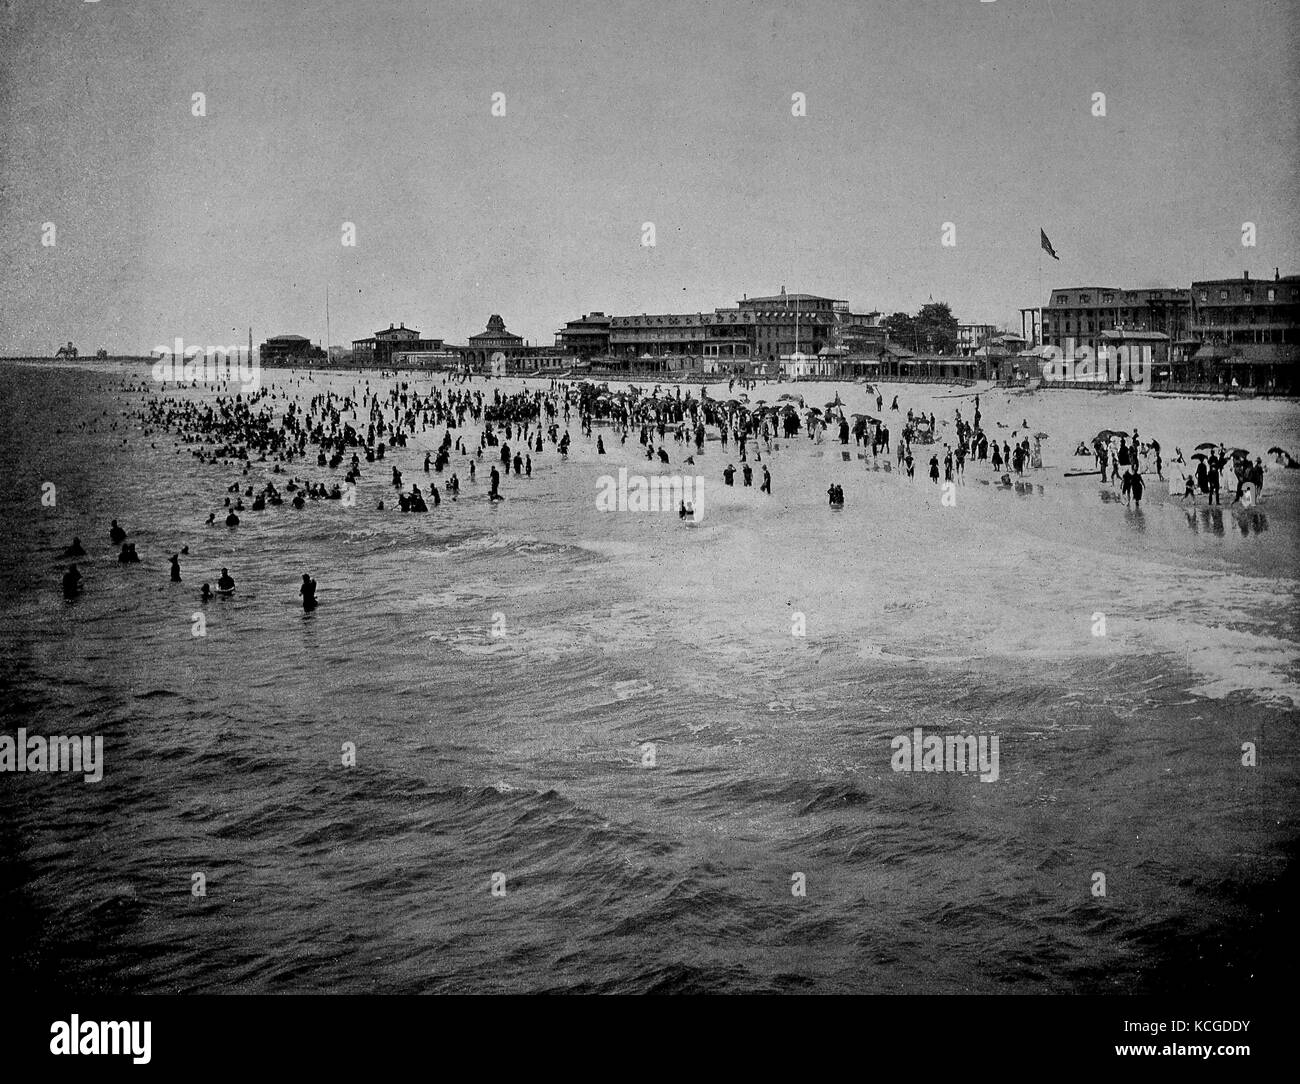 Vereinigte Staaten von Amerika, der Strand an der Südküste von New Jersey, die Strandpromenade des Seebades Cape May, digital verbesserte Reproduktion einer historischen Foto aus dem (geschätzten) Jahr 1899 Stockfoto